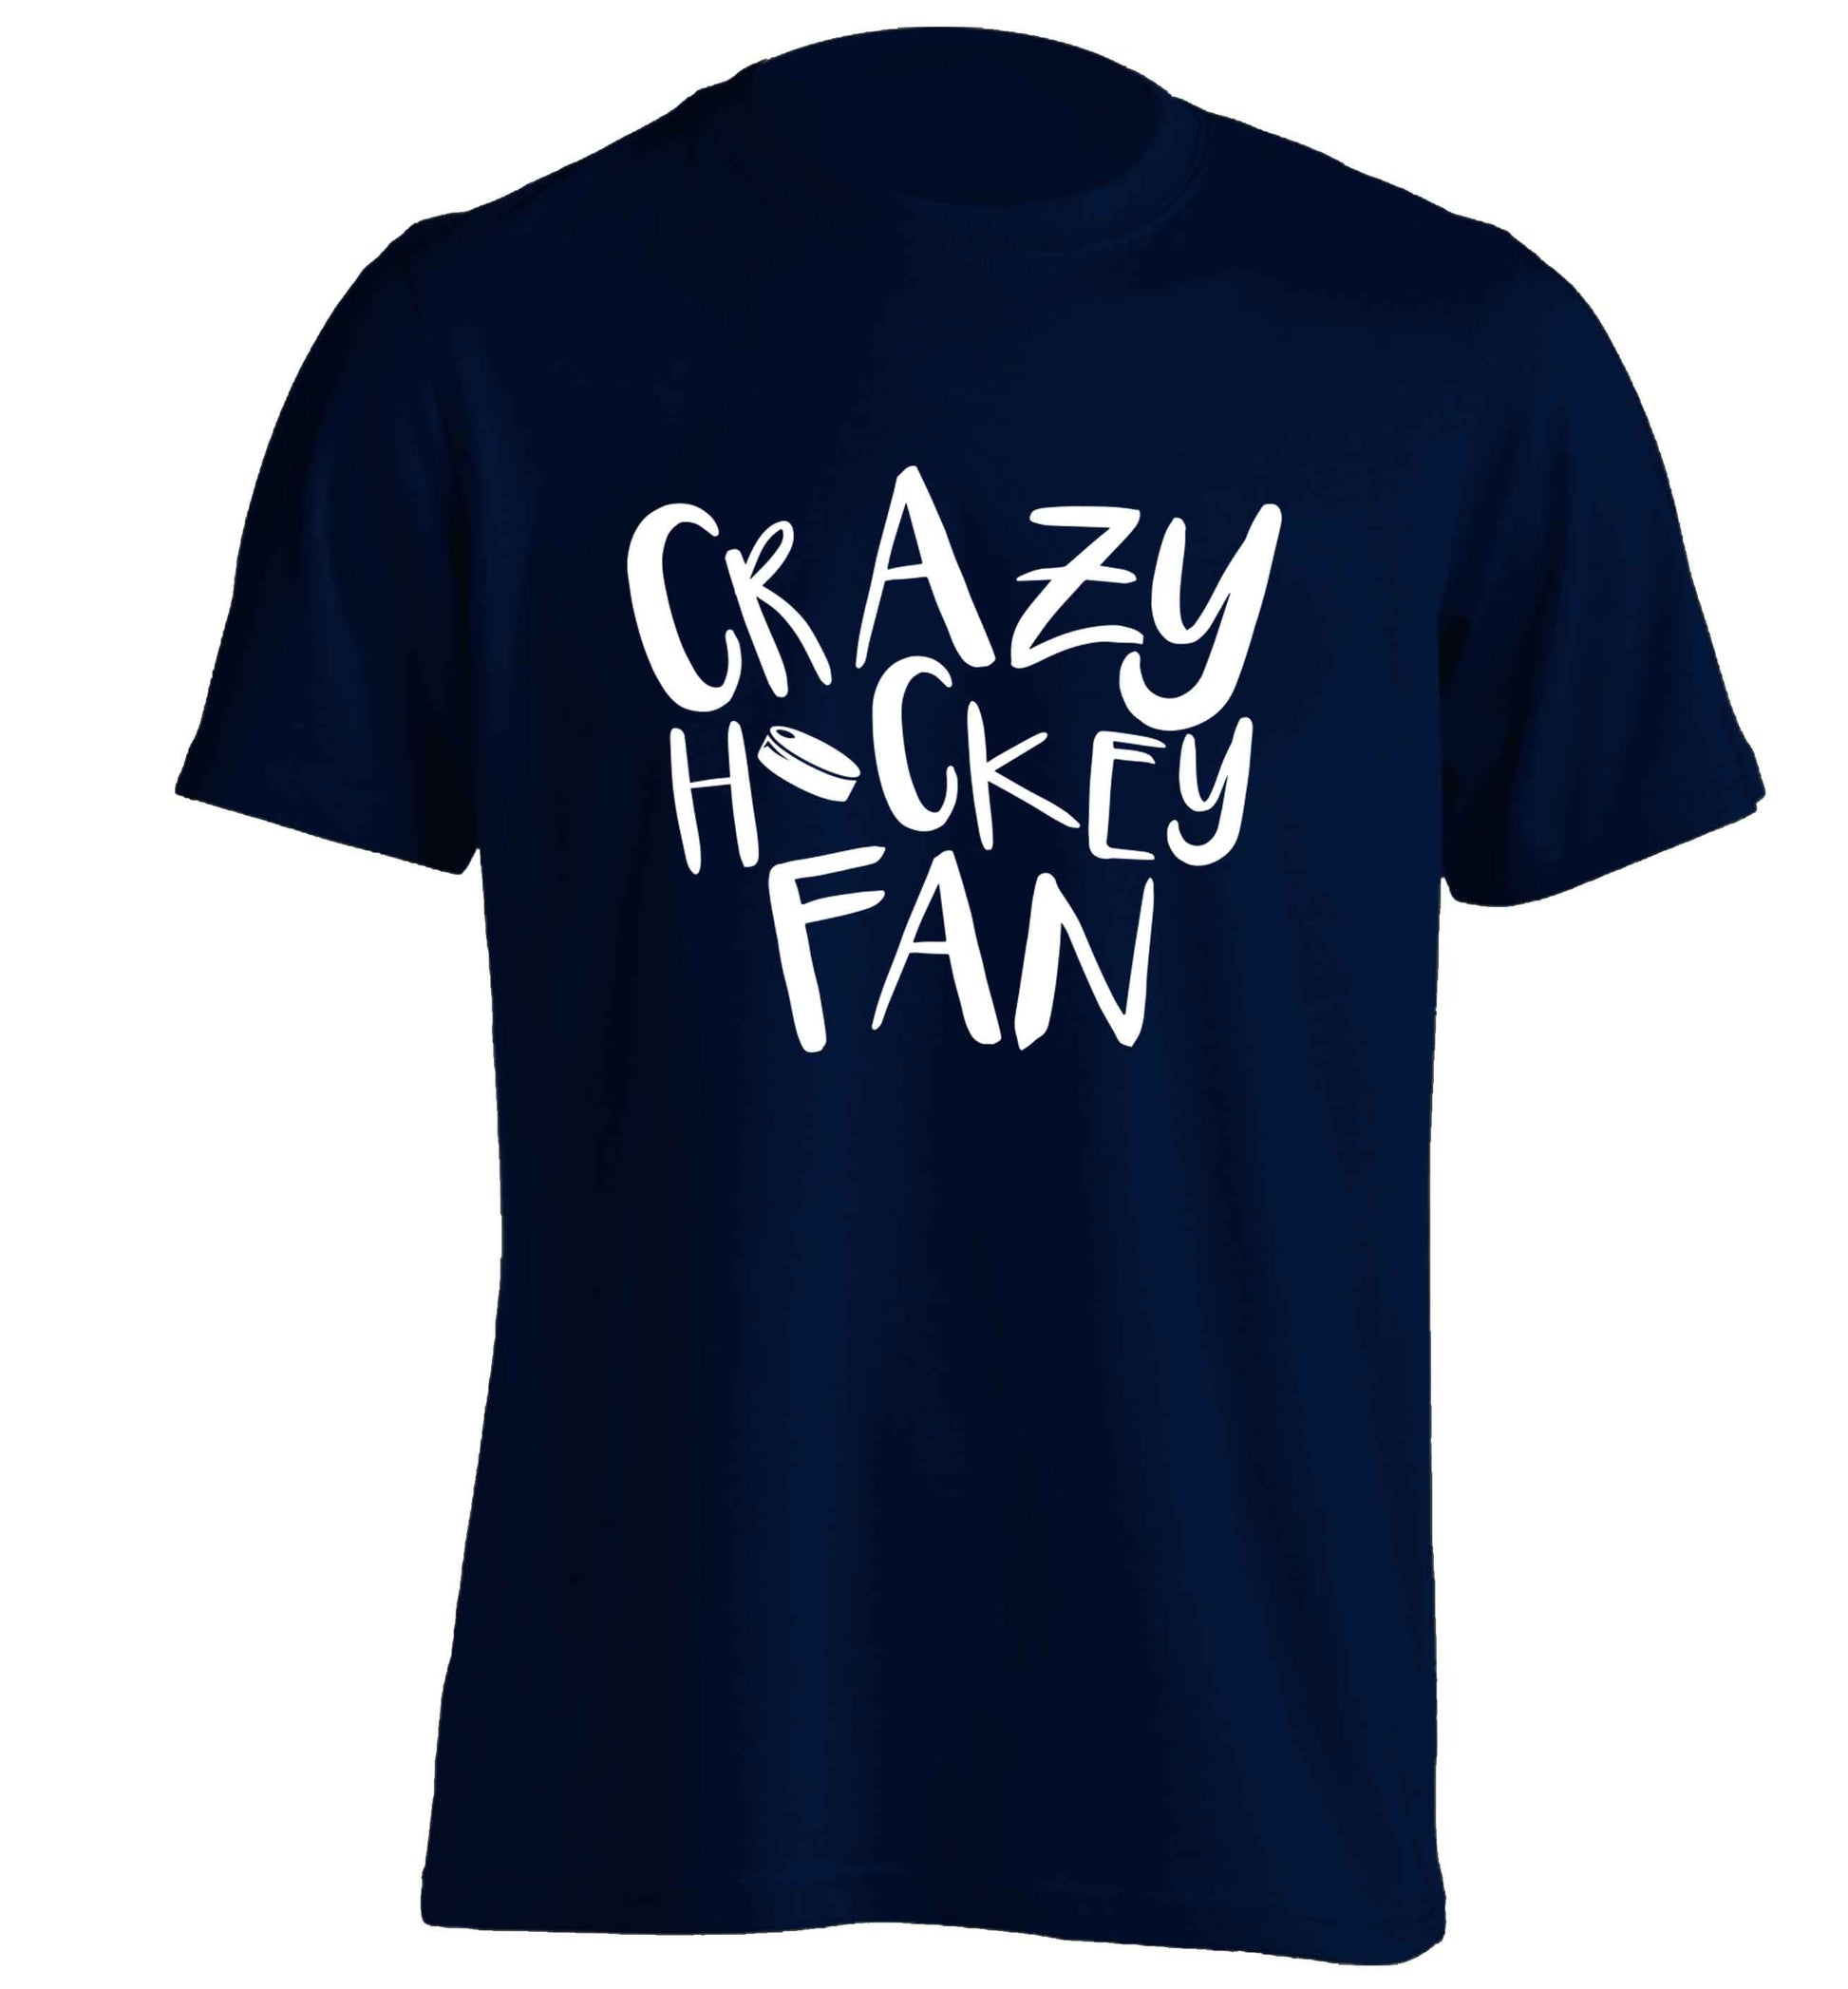 Crazy hockey fan adults unisex navy Tshirt 2XL